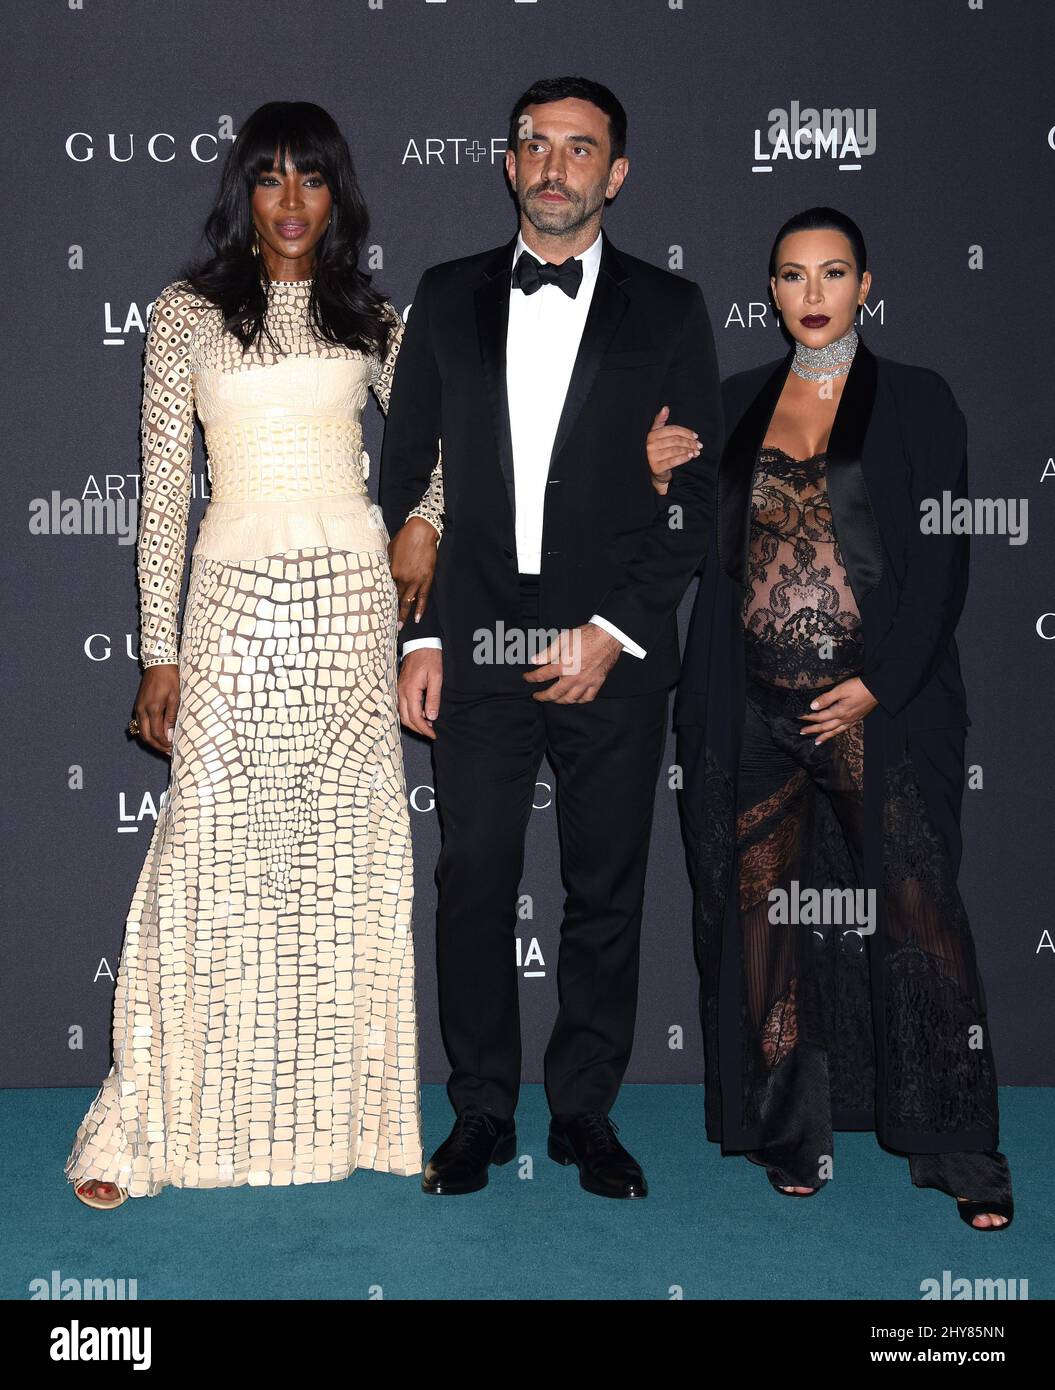 Naomi Campbell, Riccardo Tisci et Kim Kardashian assistent au gala Art+film de LACMA 2015 en l'honneur de James Turrell et Alejandro G Inarritu au LACMA le 7 novembre 2015 à Los Angeles, CA, USA. Banque D'Images